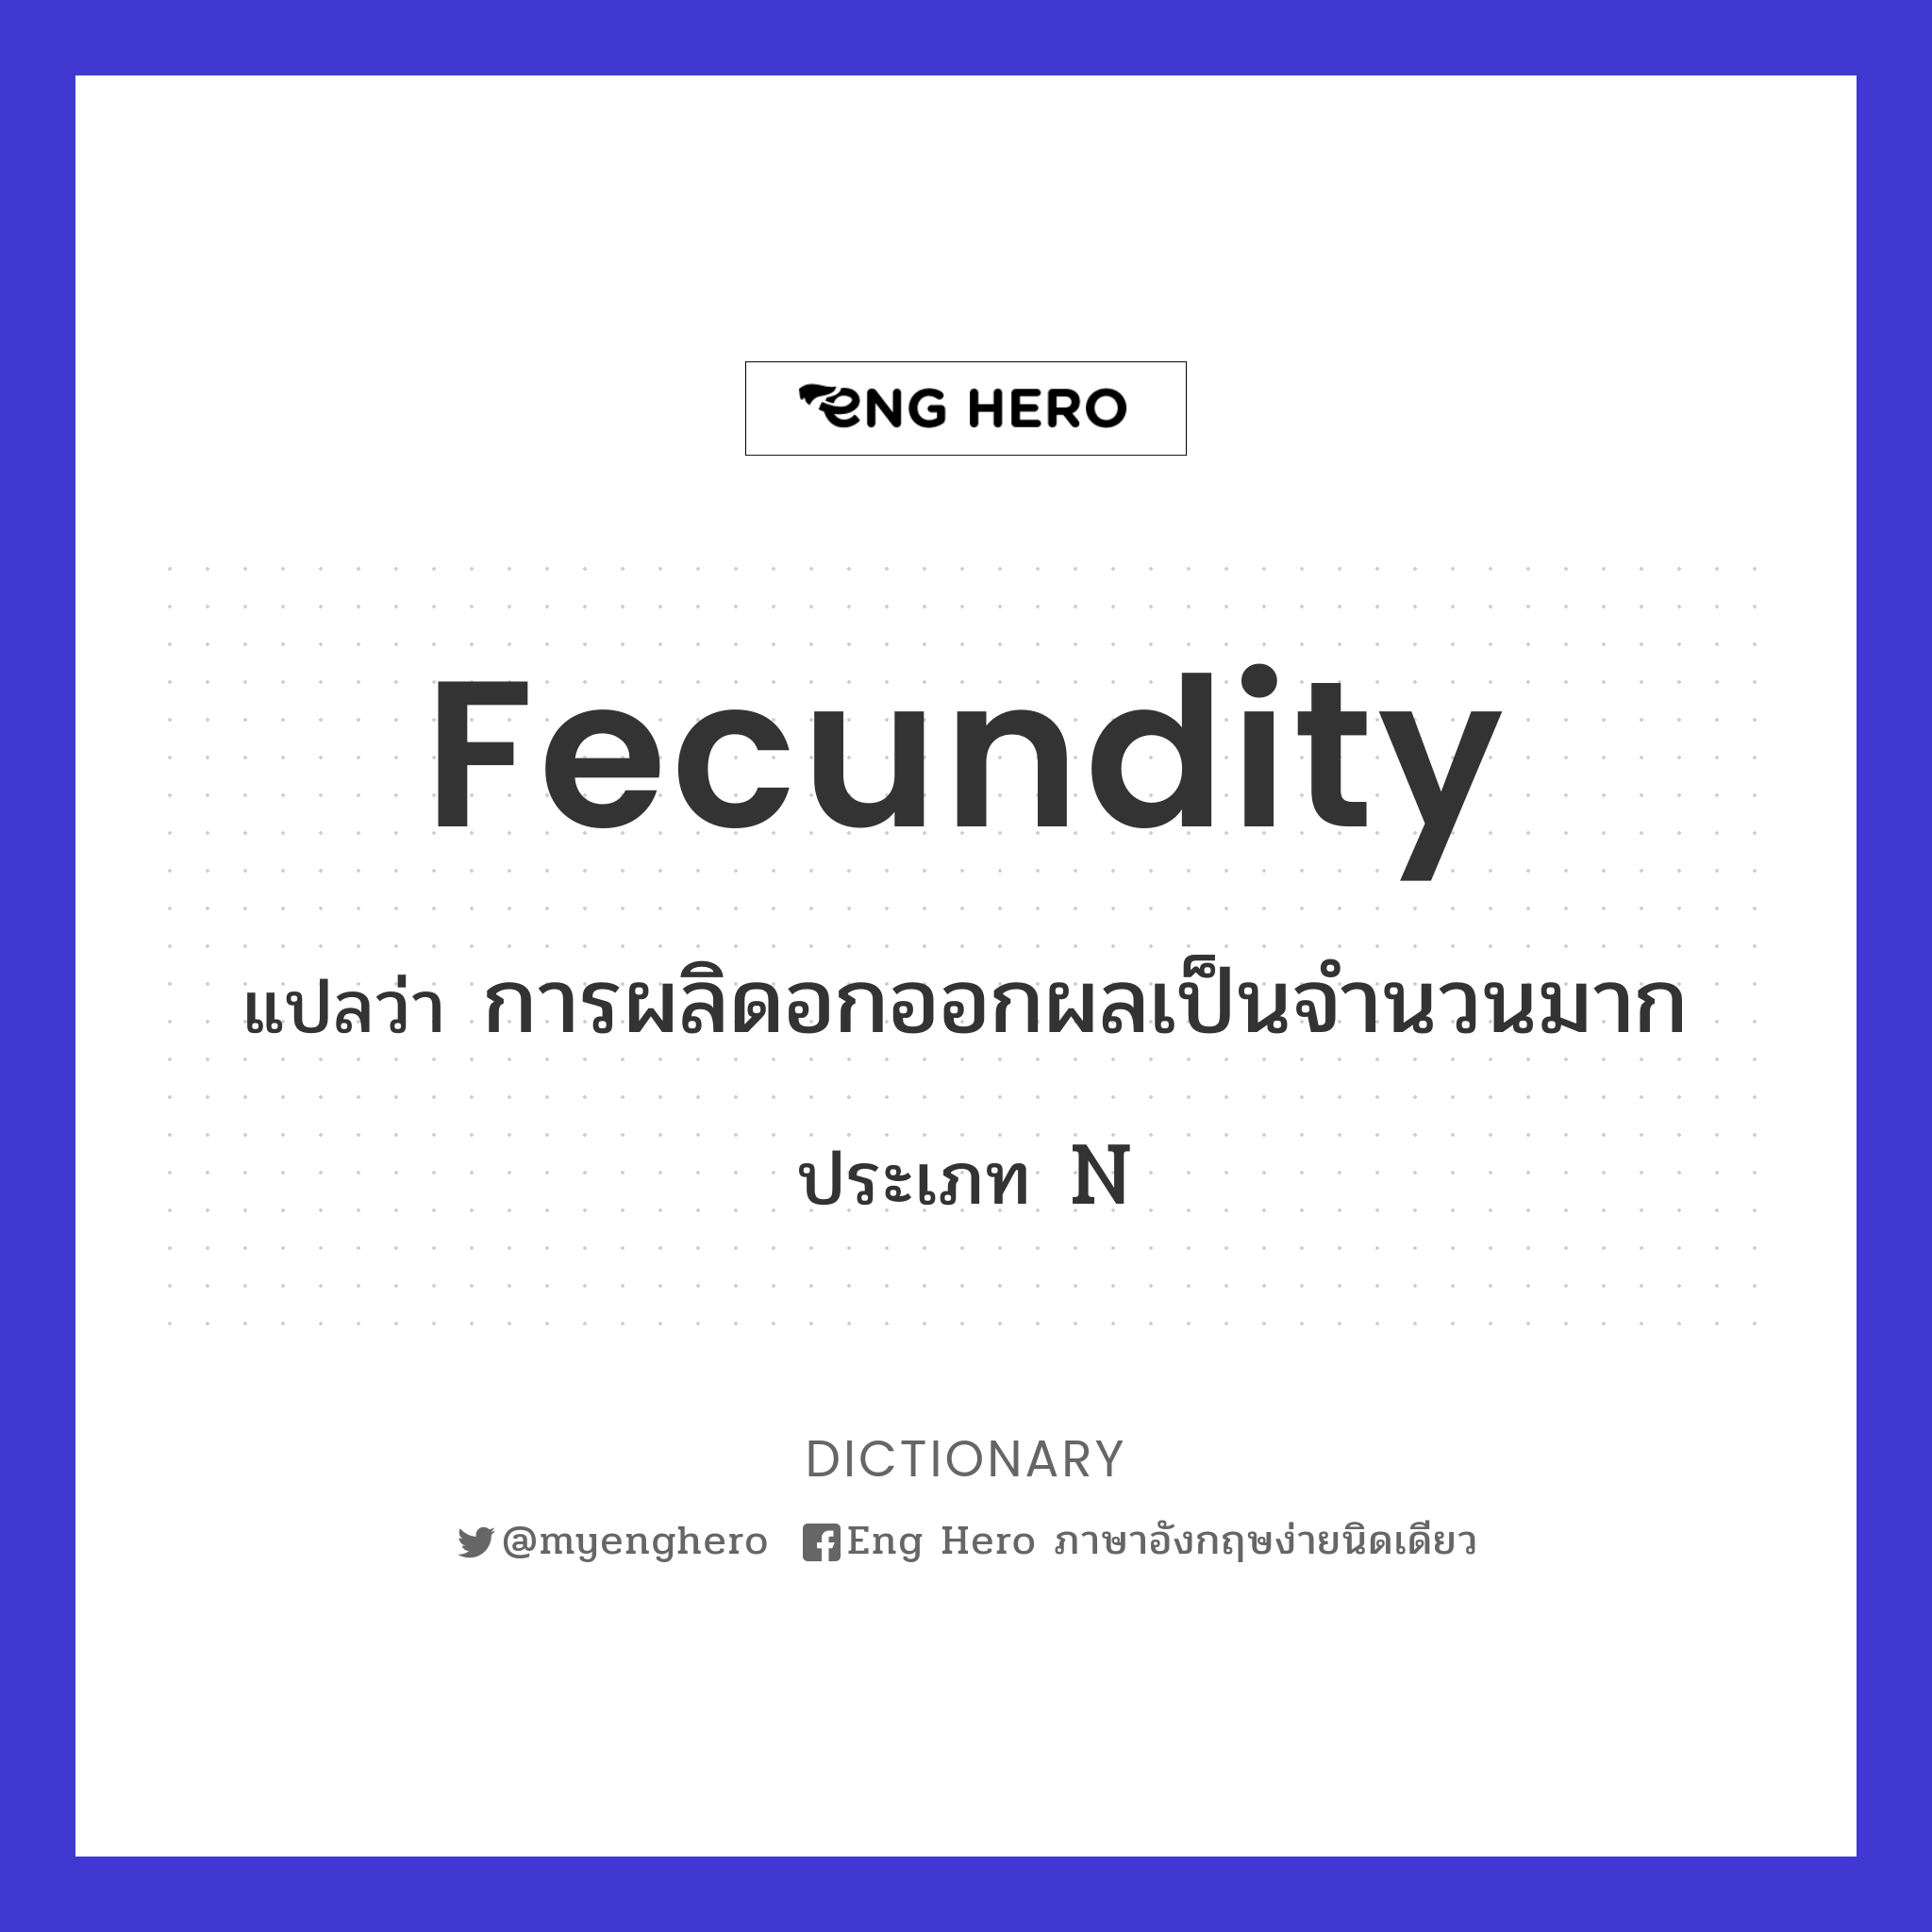 fecundity